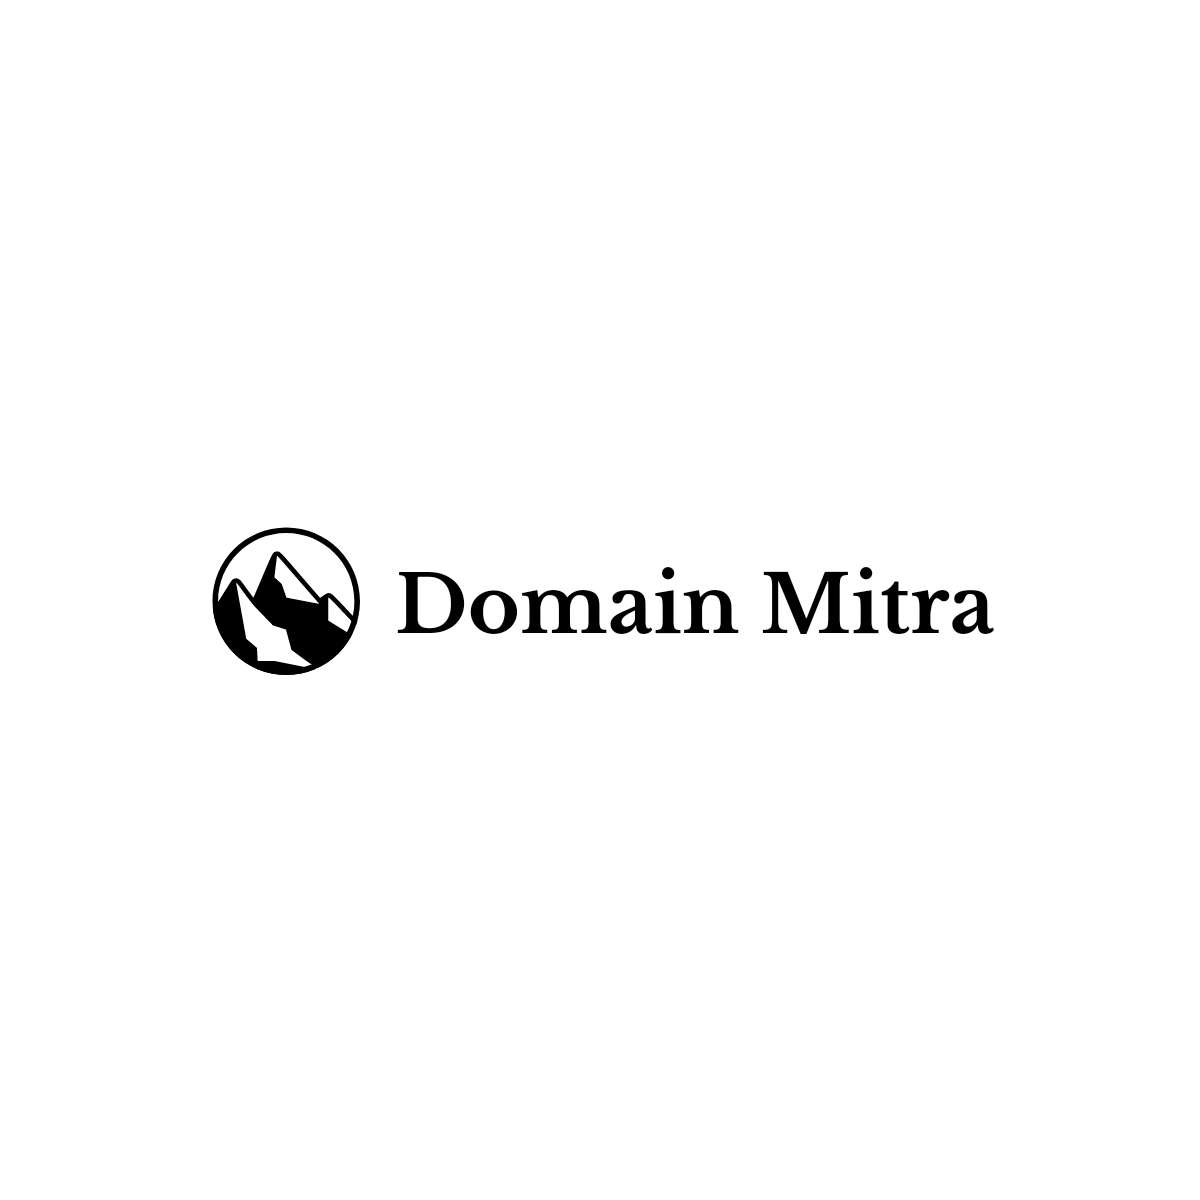 Domain Mitra